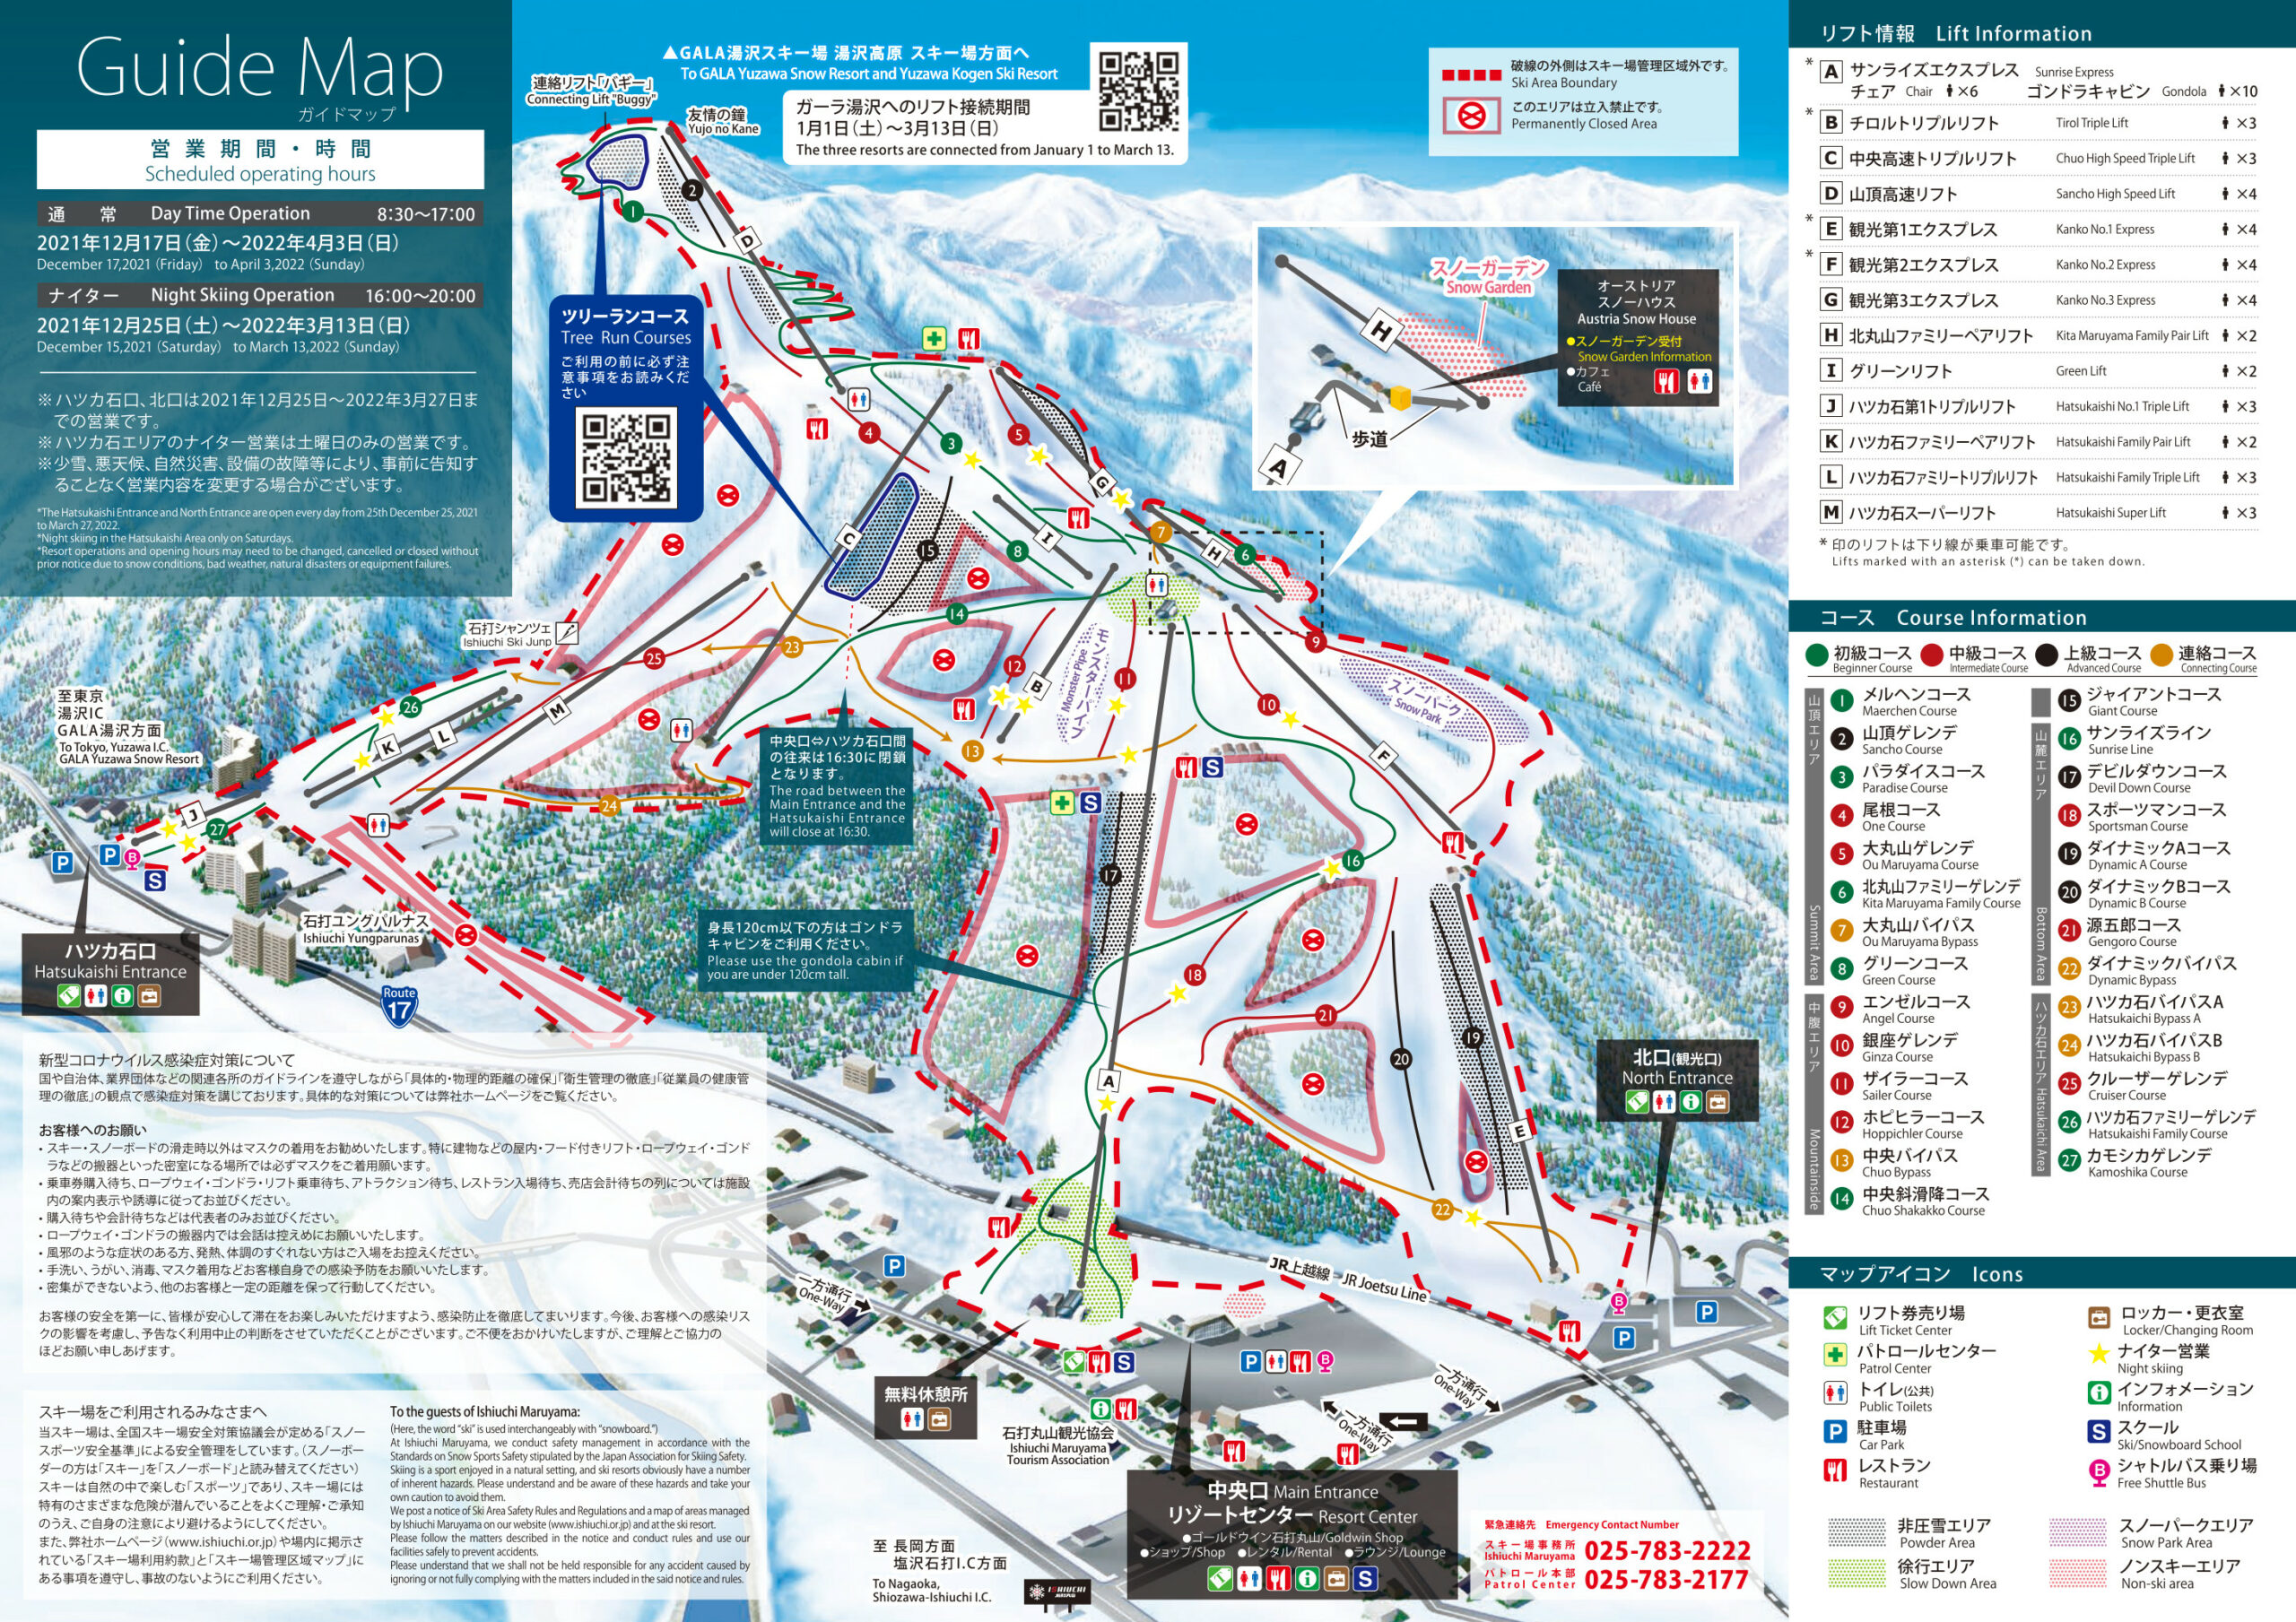 コースマップ・リフト・コース情報 | 石打丸山スキー場【公式サイト】